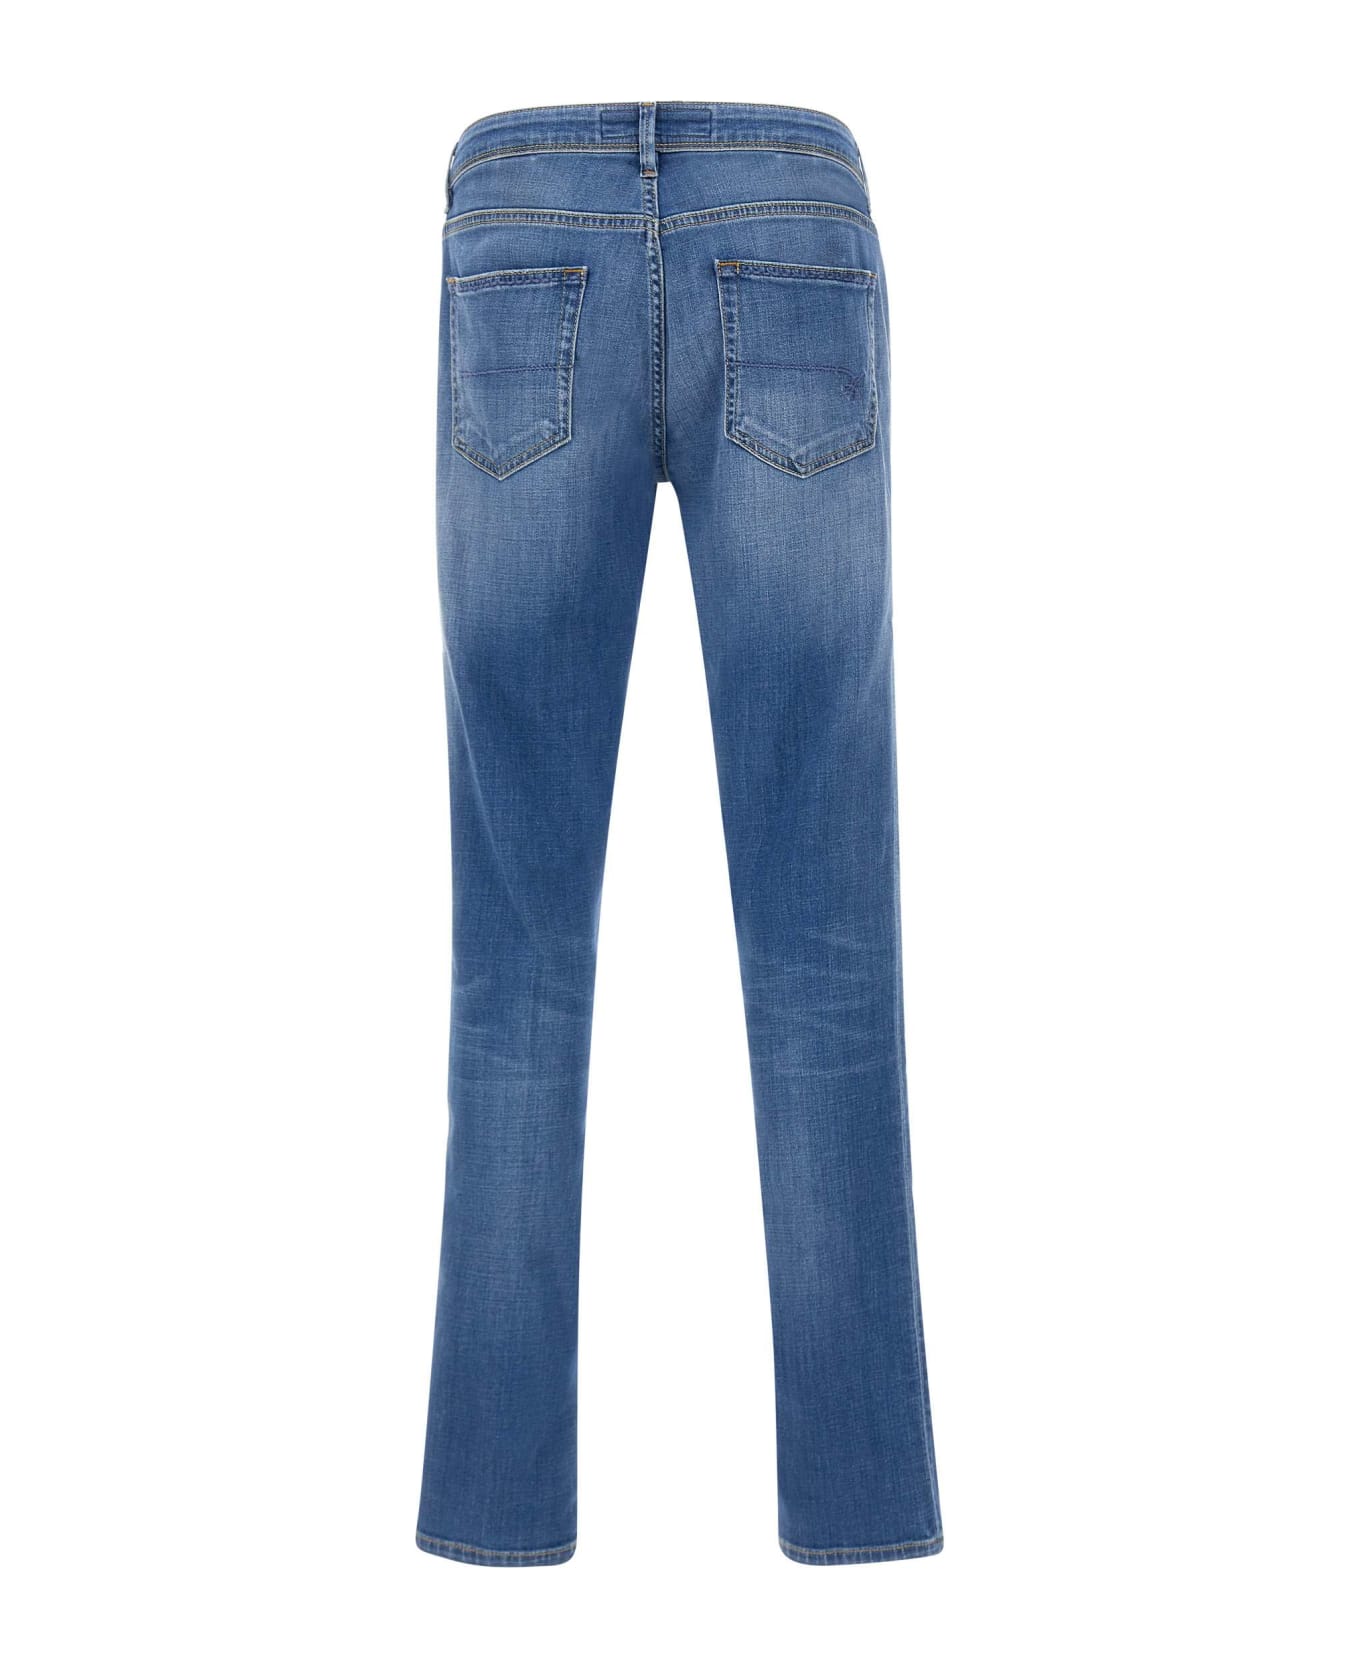 Re-HasH "rubens Z" Jeans - BLUE